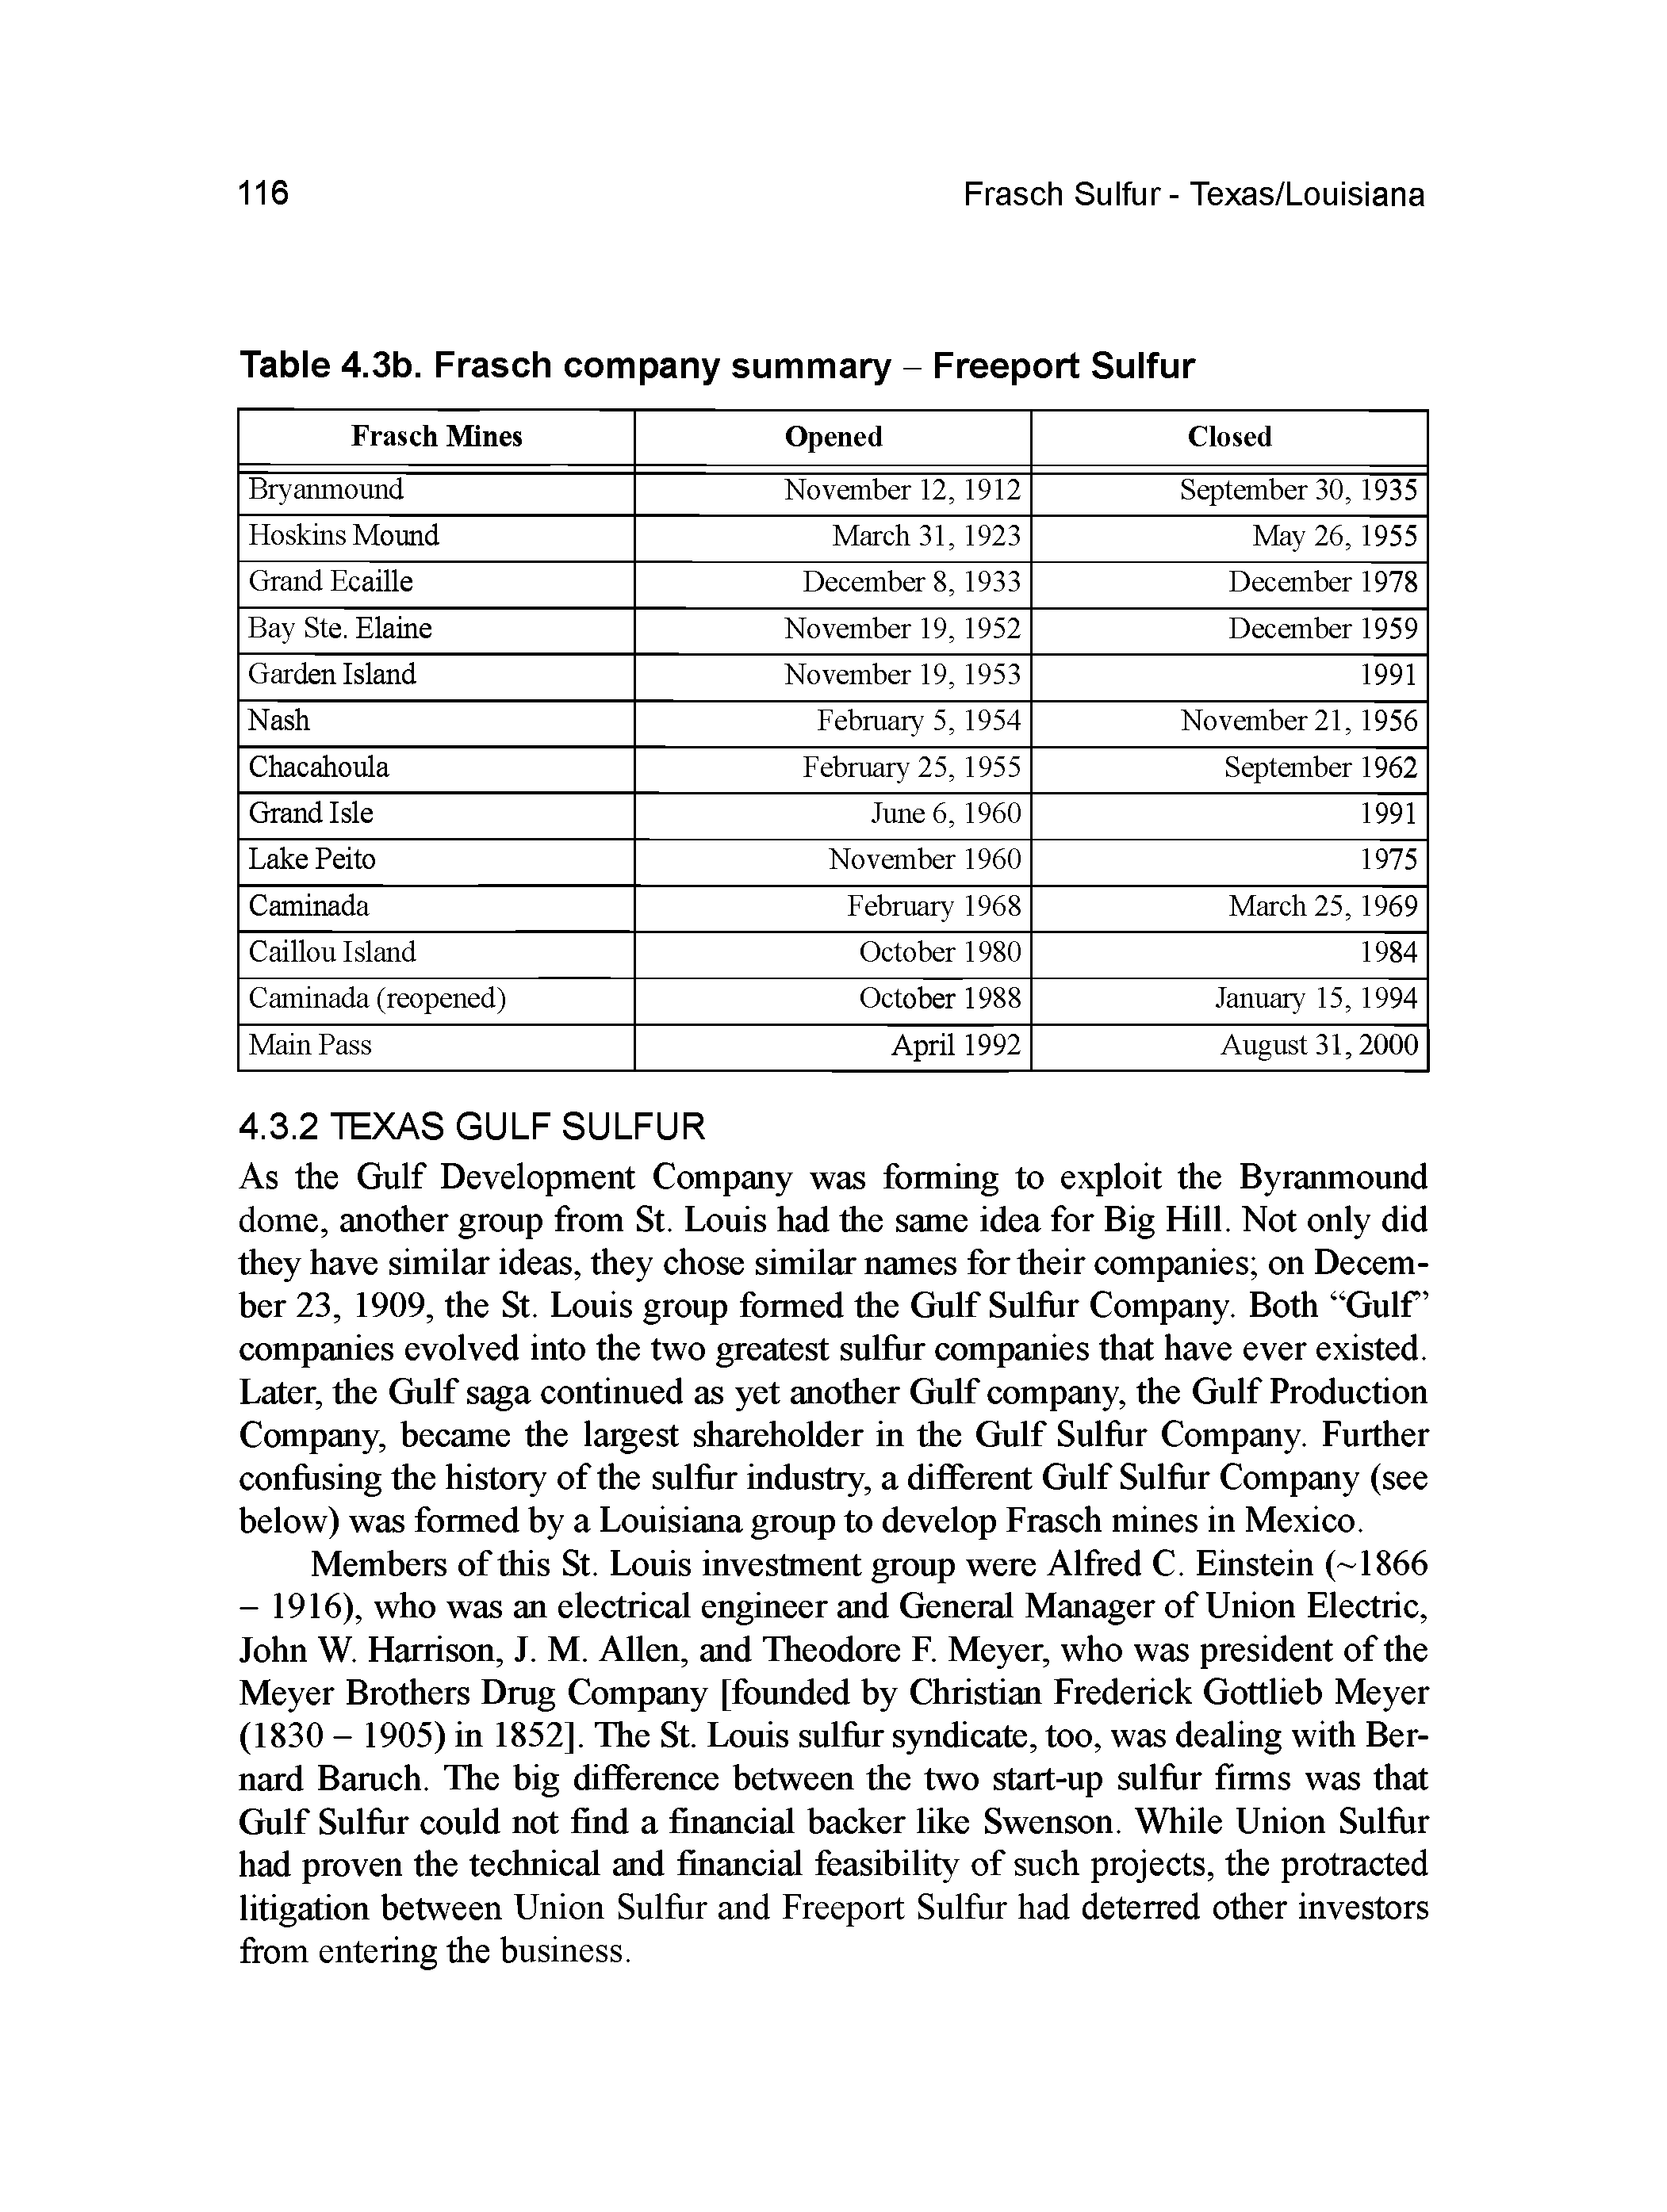 Table 4.3b. Frasch company summary - Freeport Sulfur...